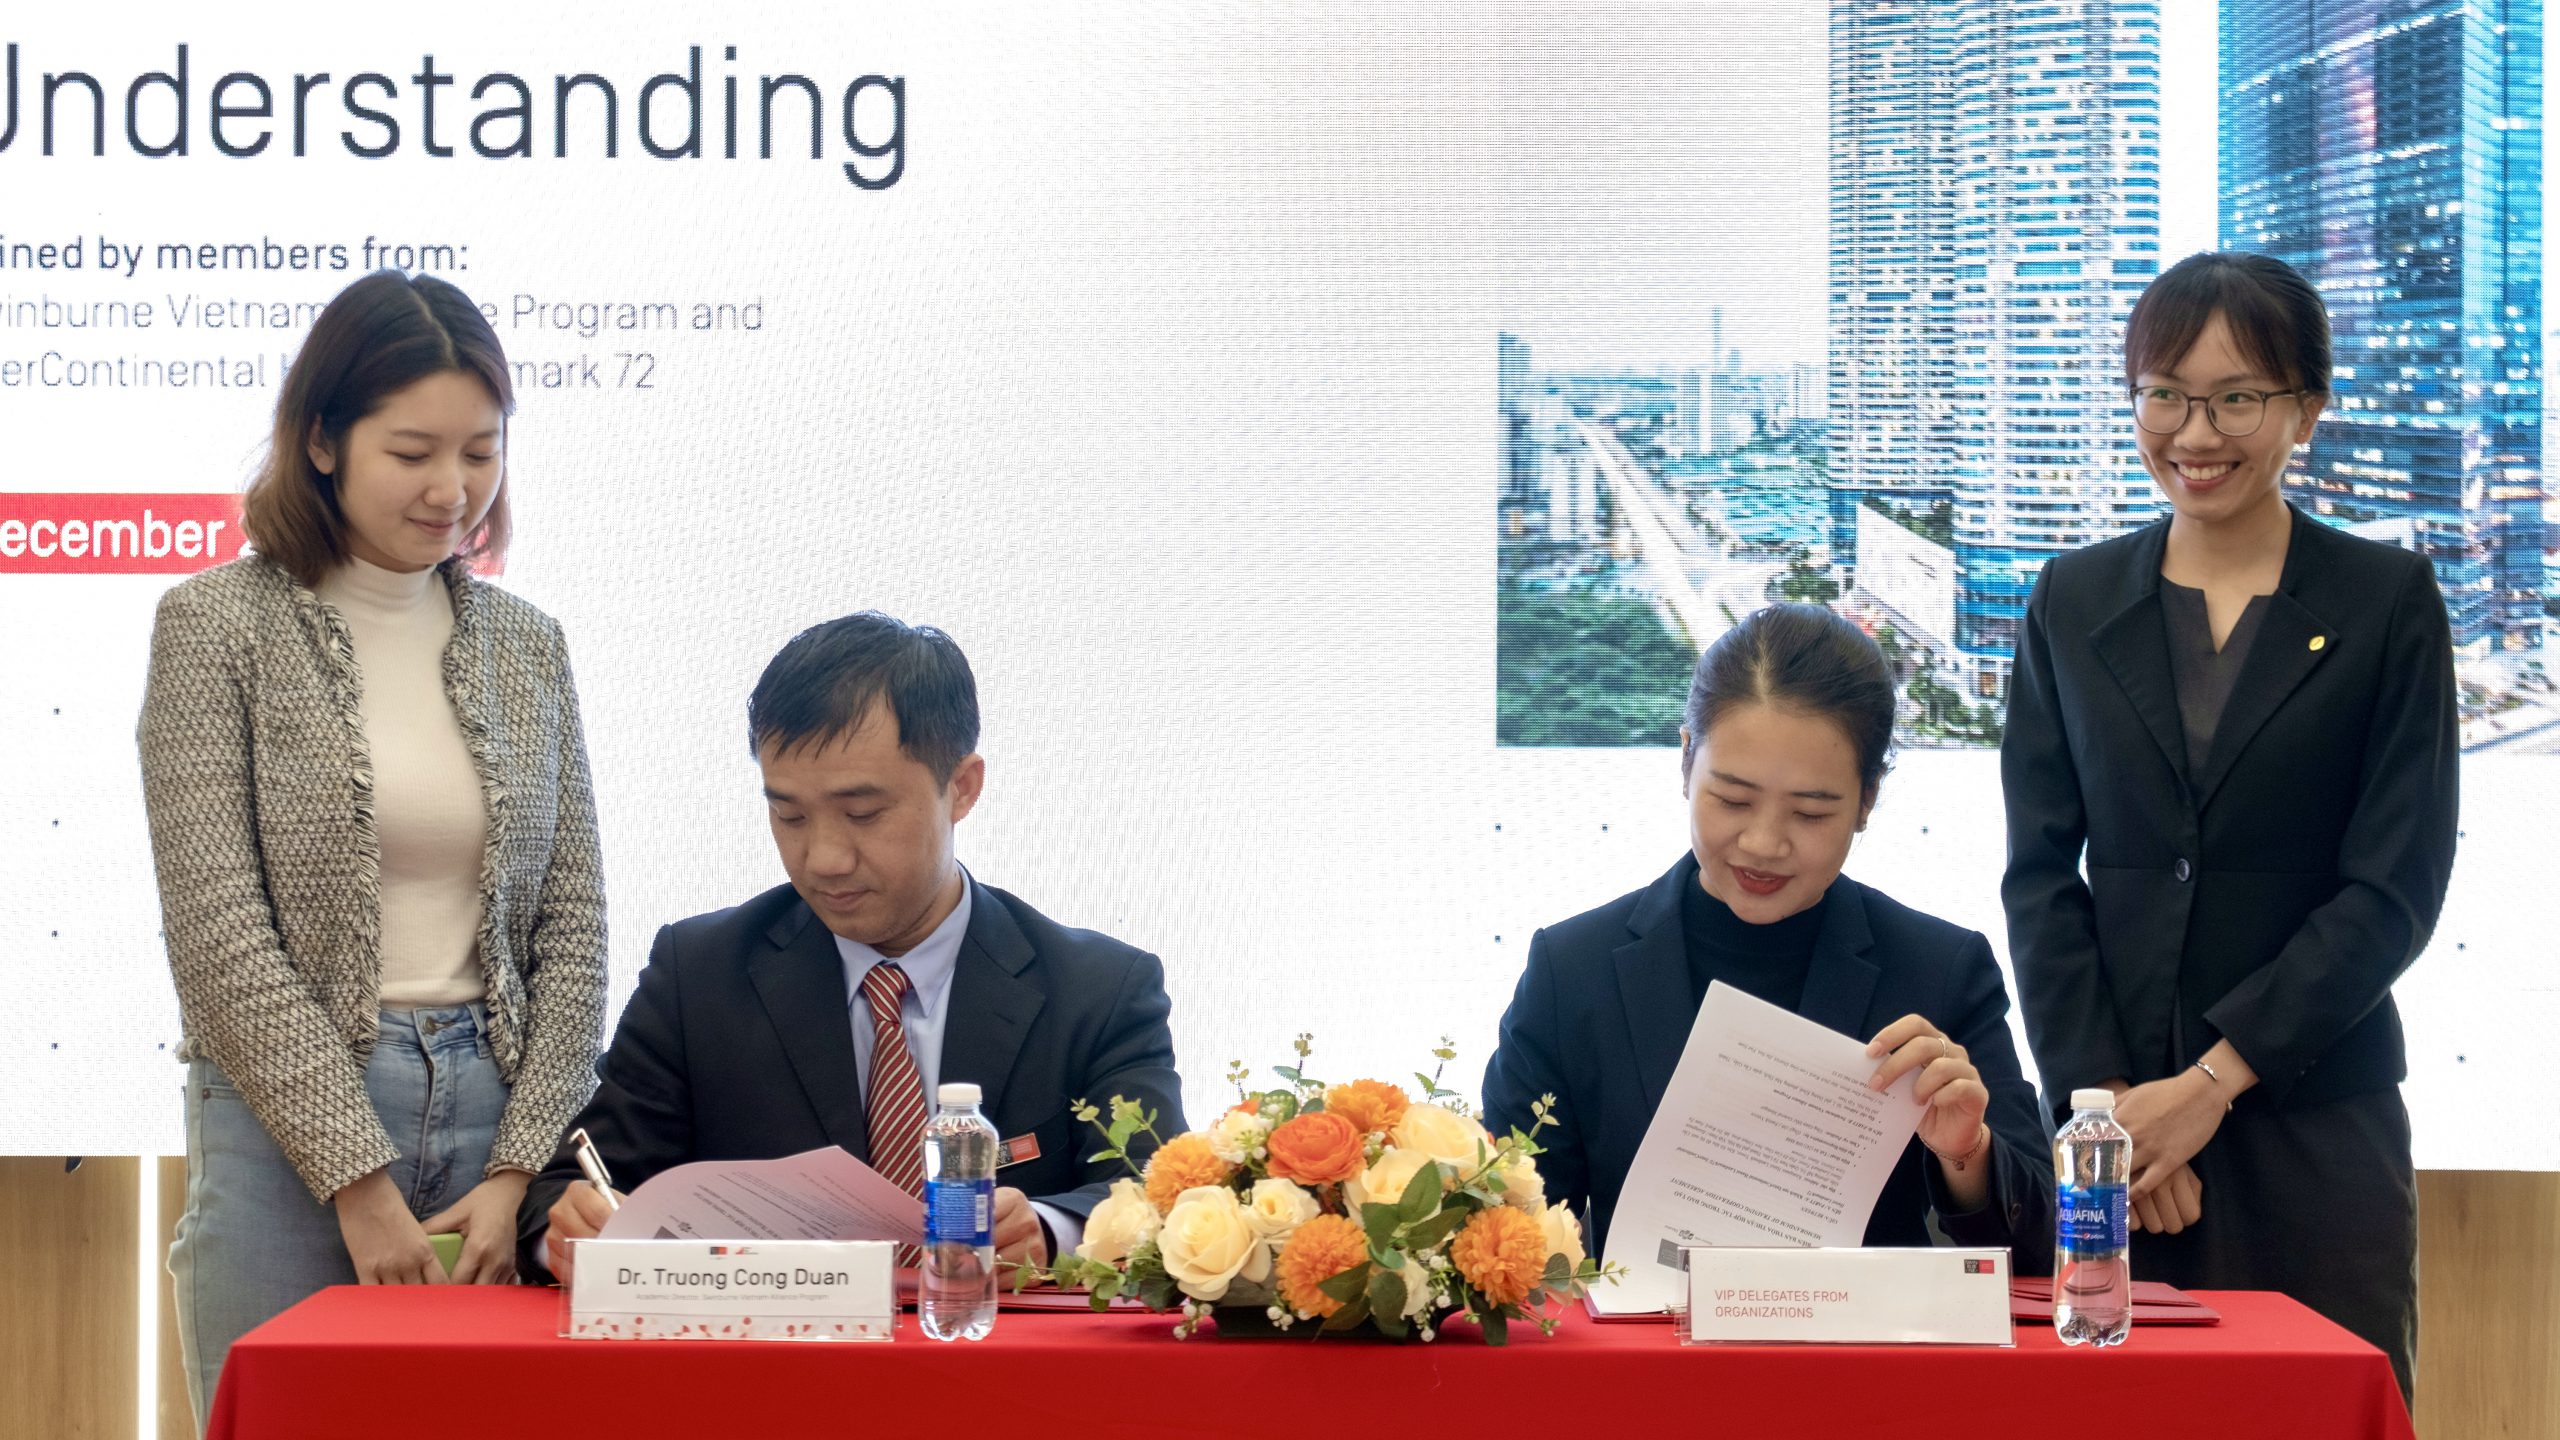 Swinburne Vietnam Alliance Programs đã ký kết thoả thuận hợp tác (MOU) với khách sạn InterContinental Hanoi Landmark72